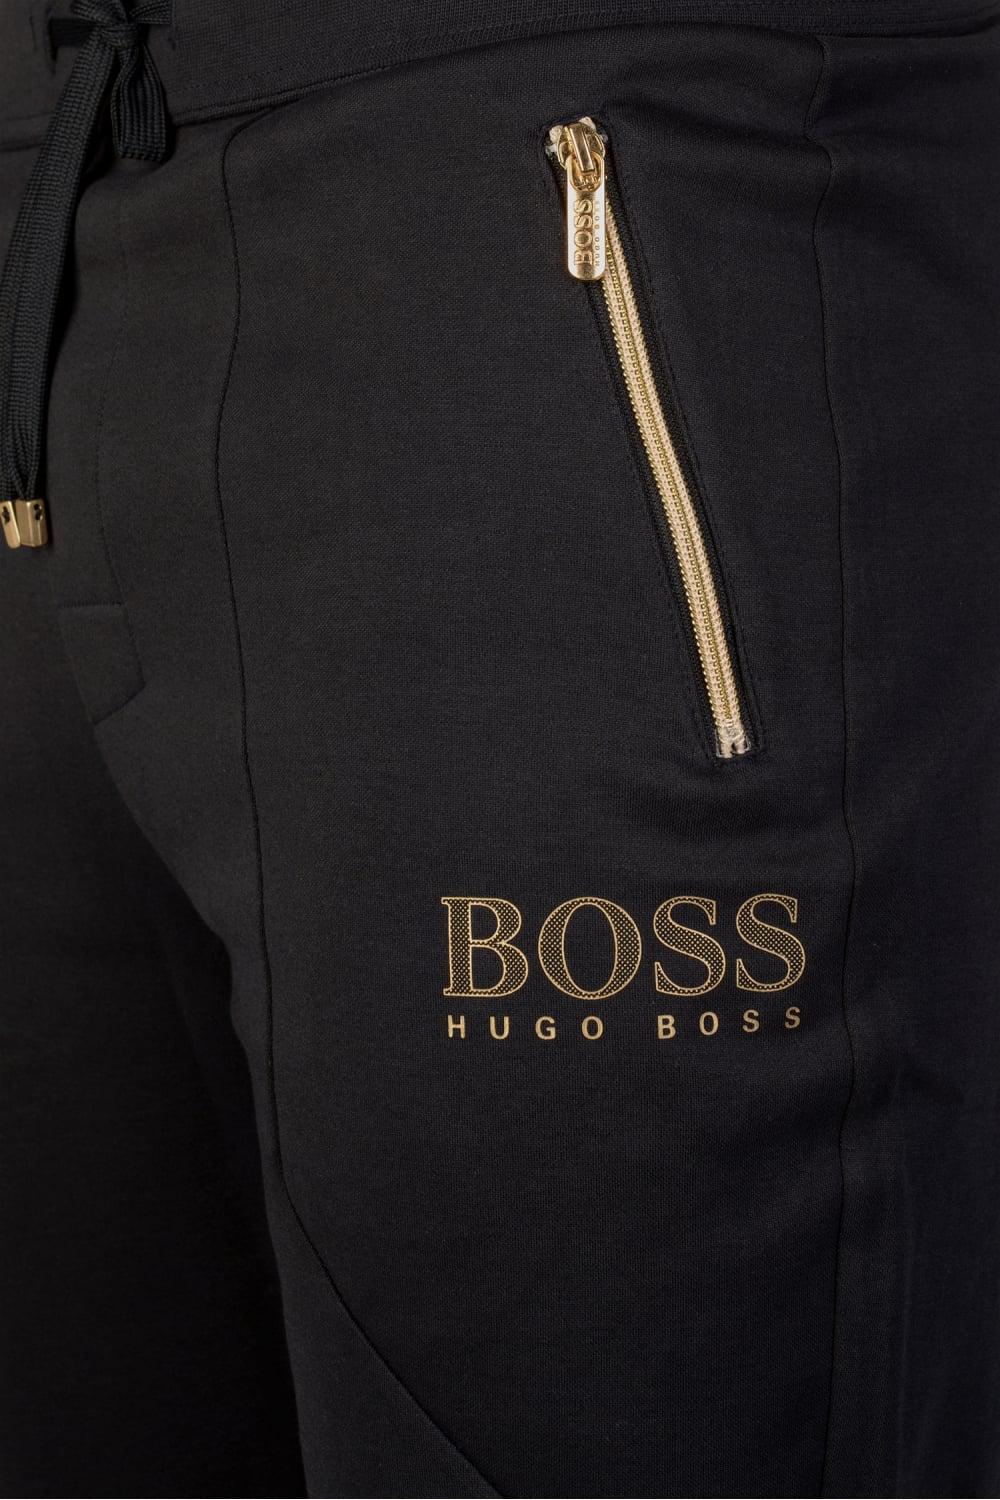 Hugo Boss Tracksuit Gold Britain, SAVE 46% - eagleflair.com